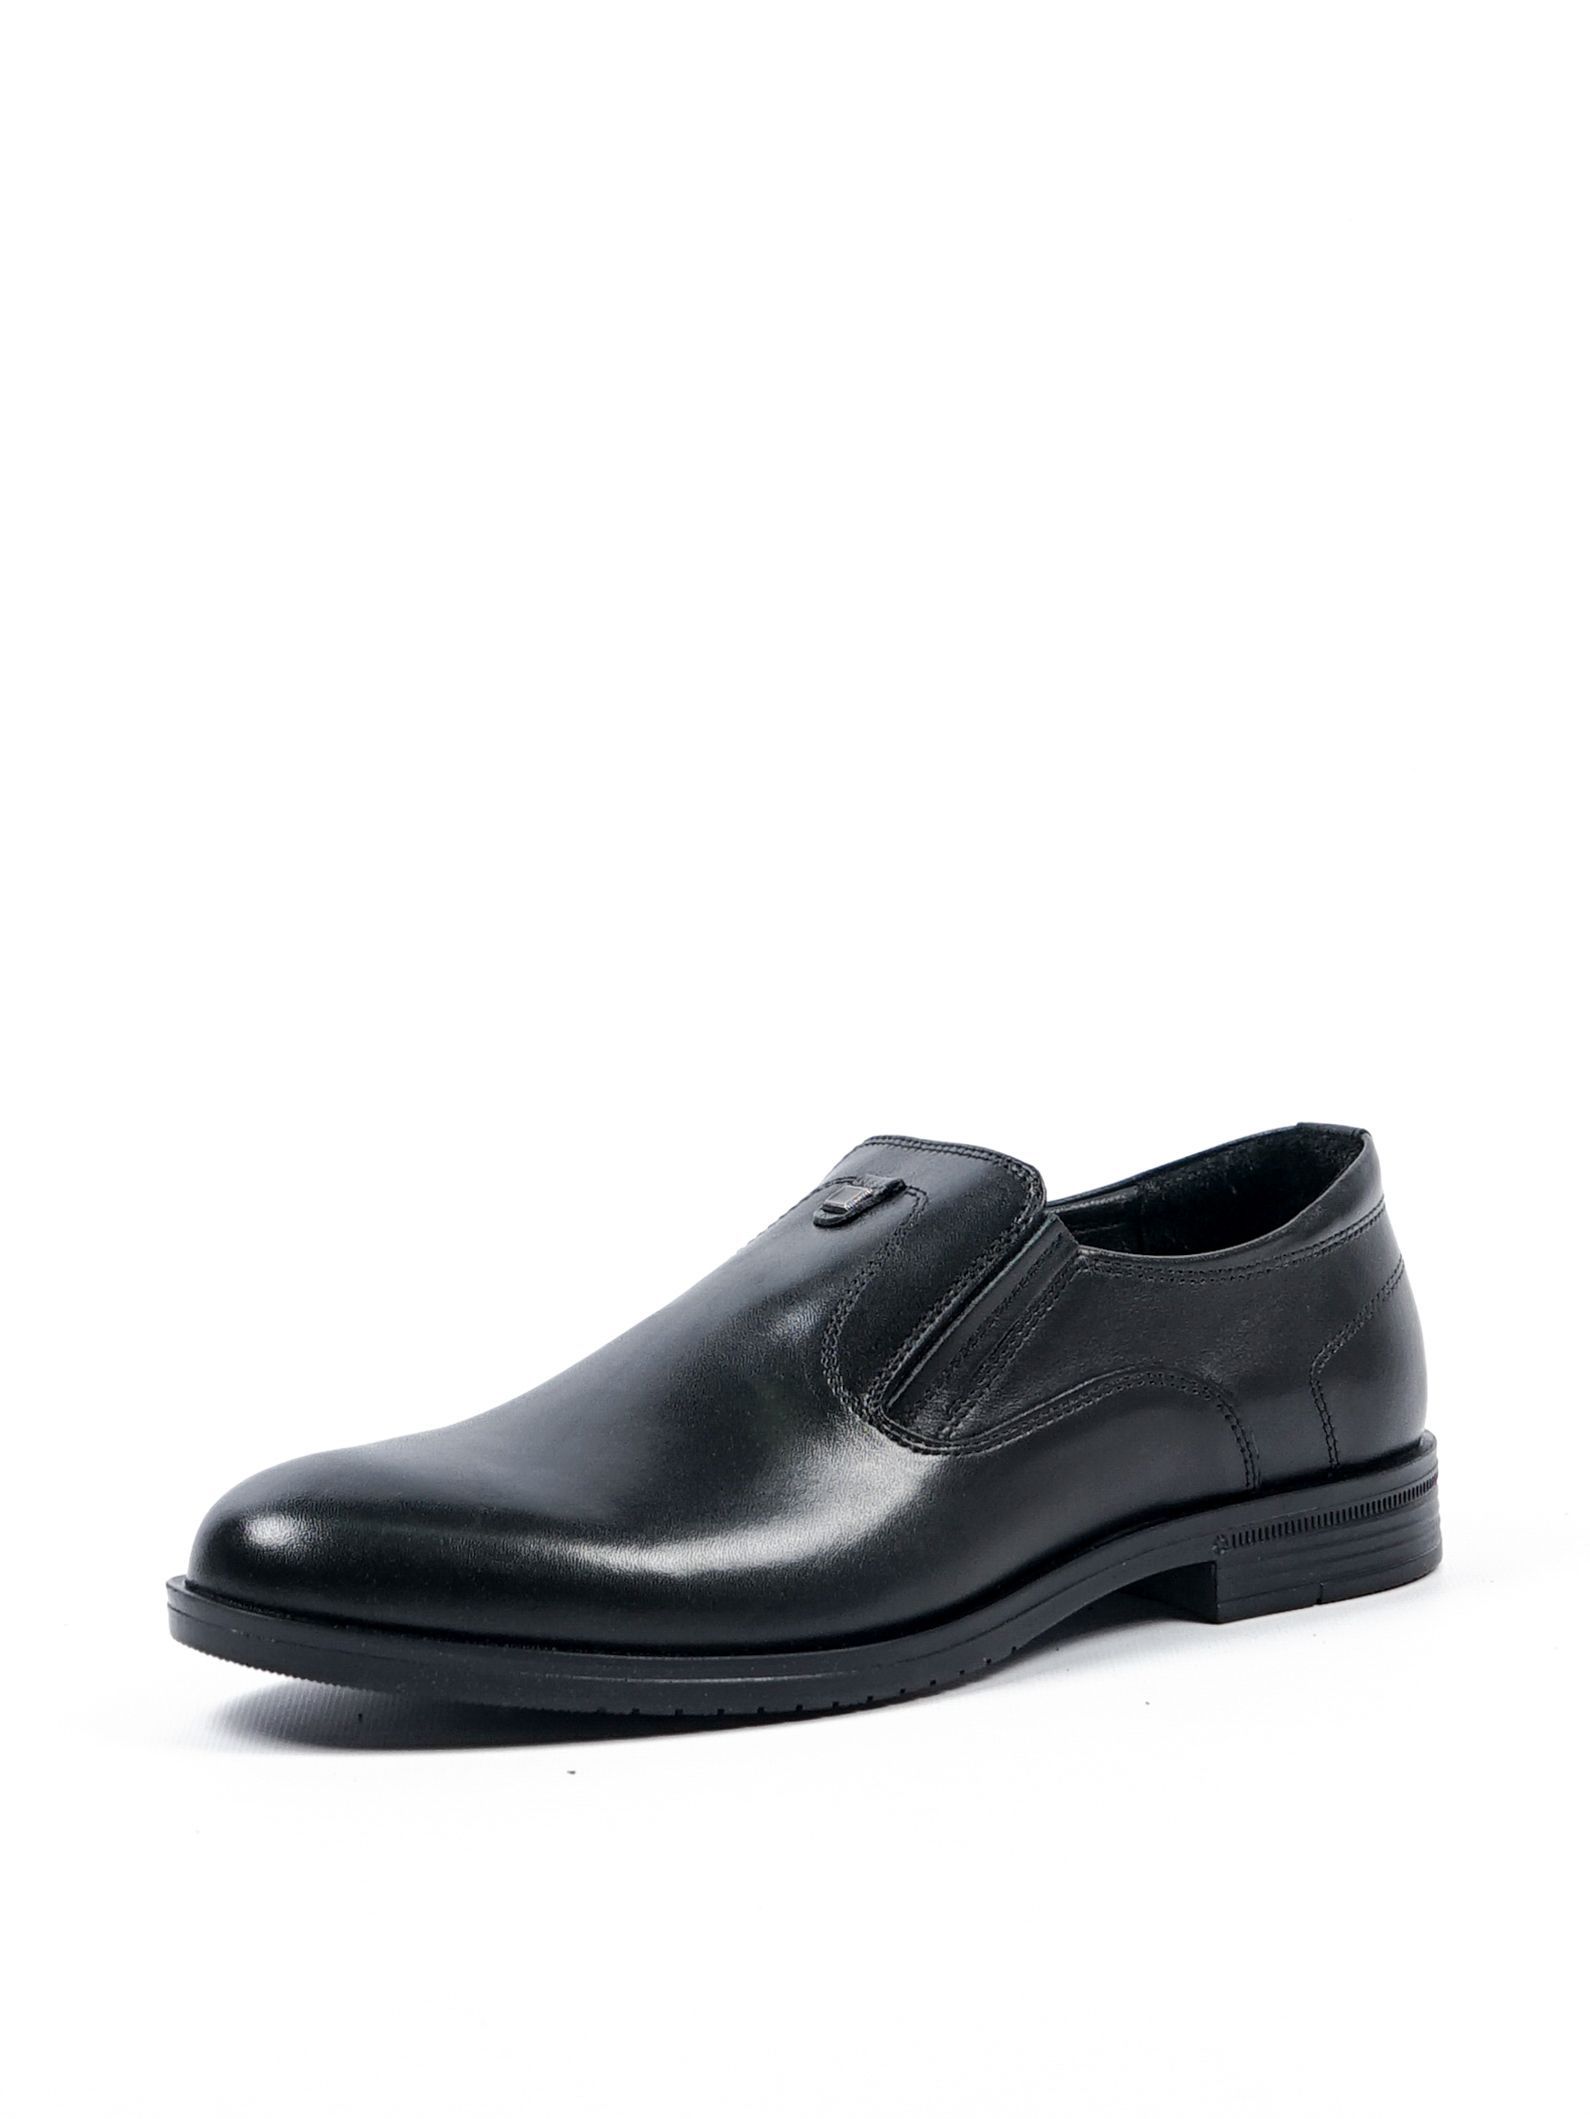 Туфли мужские Comfort Shoes 1133M черные 42 RU